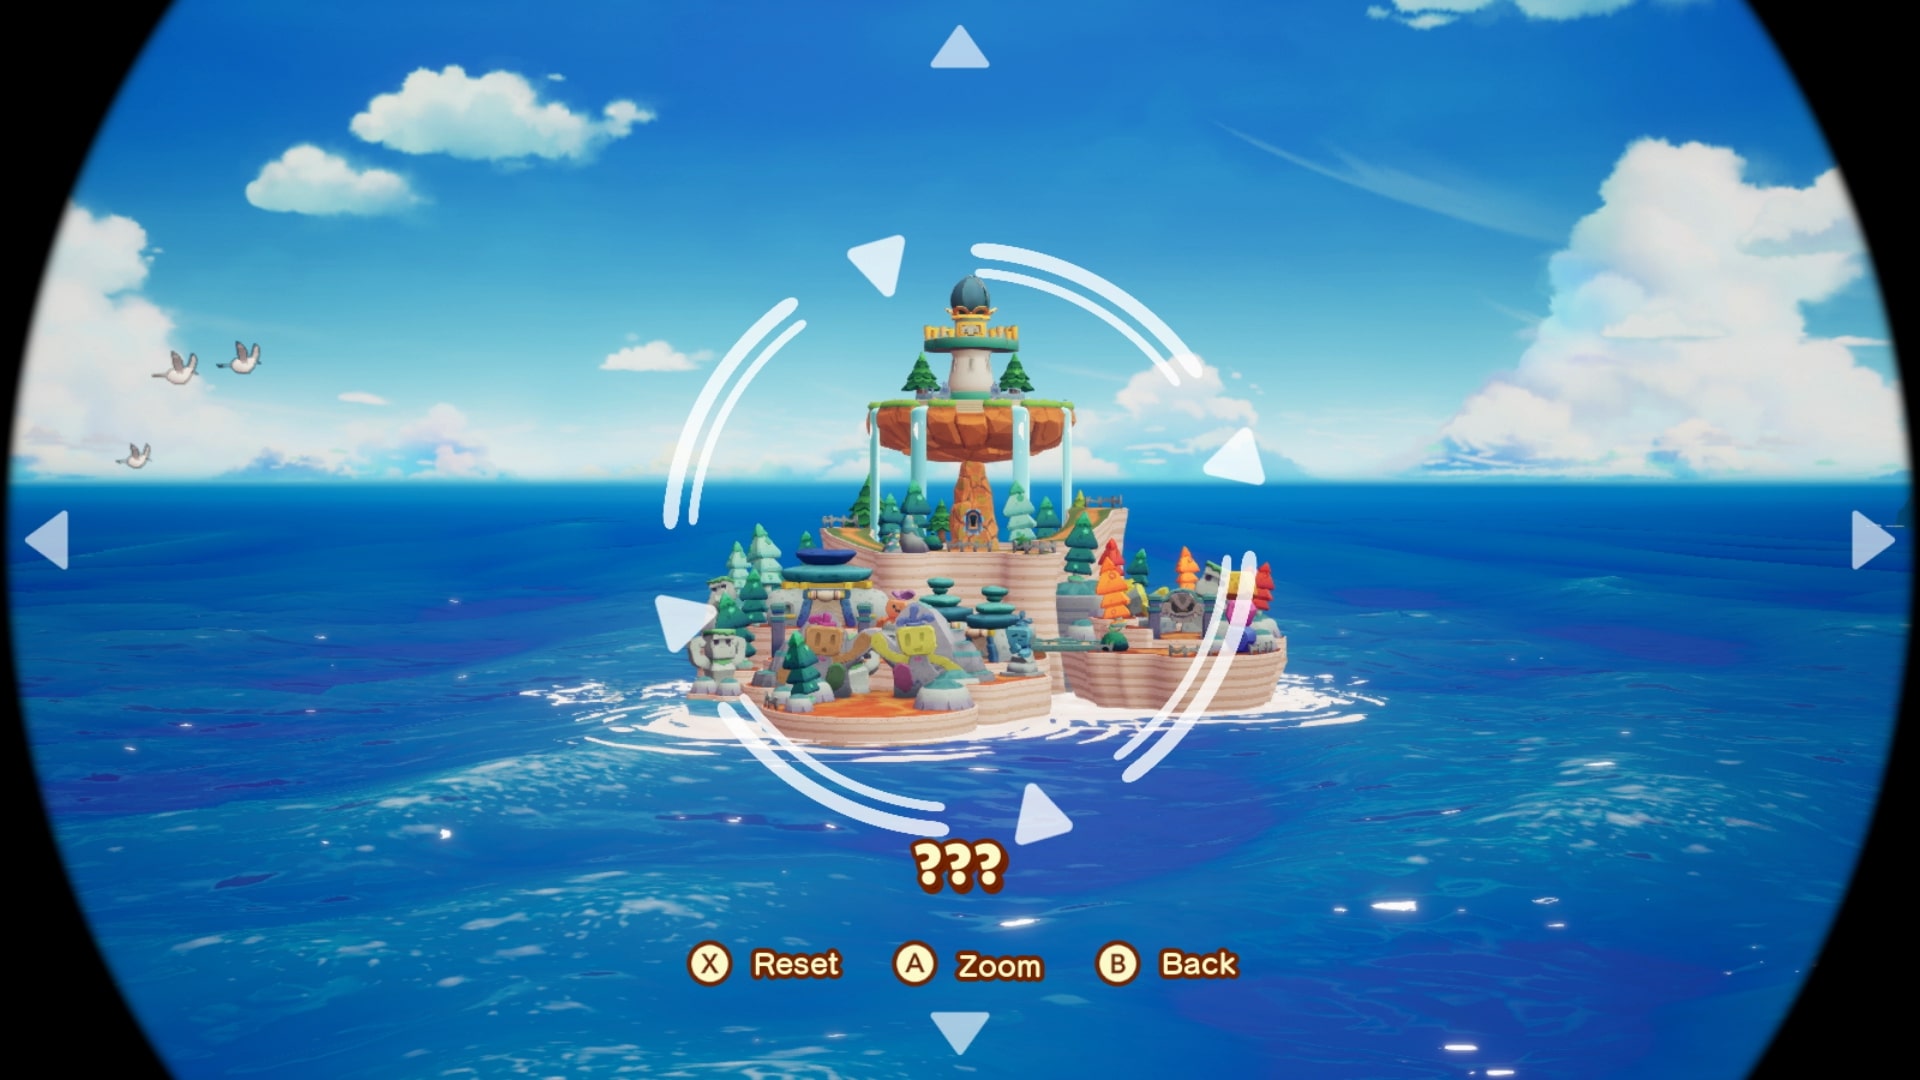 Mario et luigi l epopee fraternelle screenshot 3 1 28